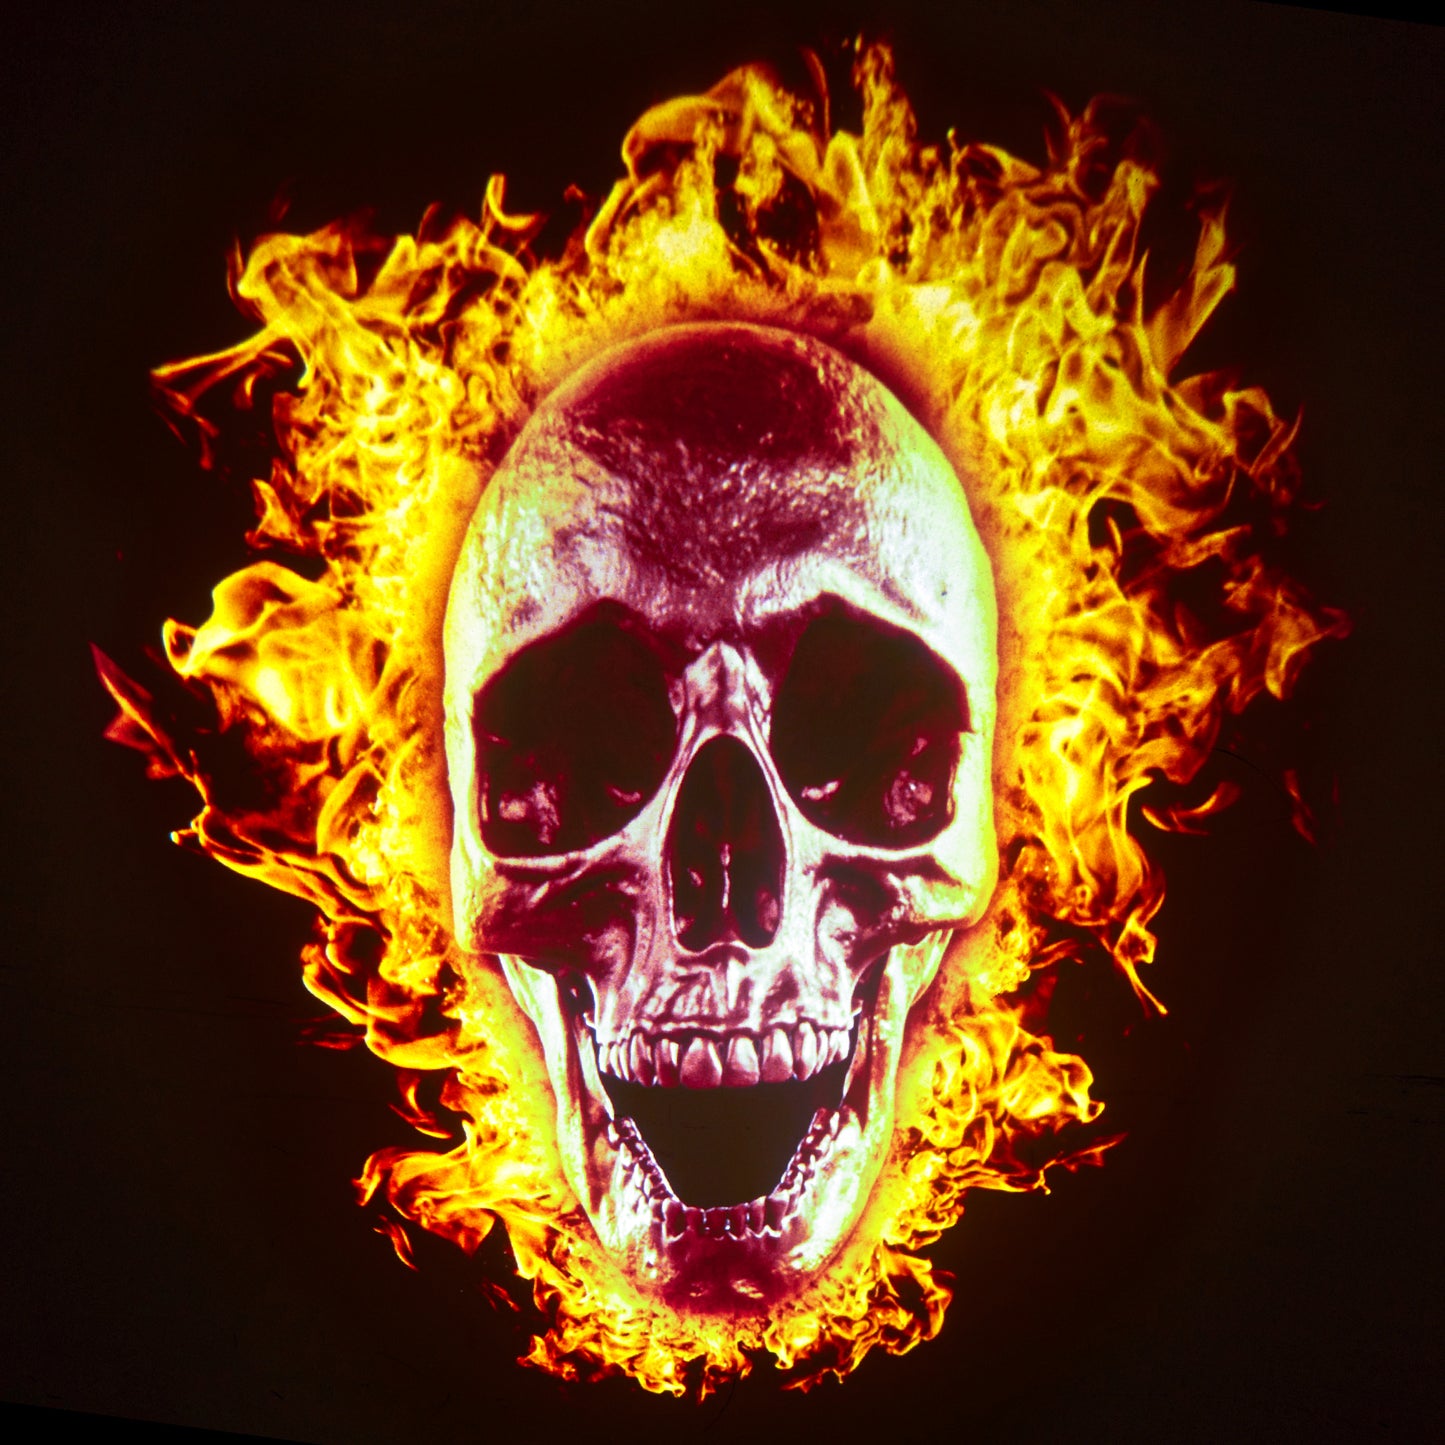 Skull's Revenge Disc Set for LaView Star Projector